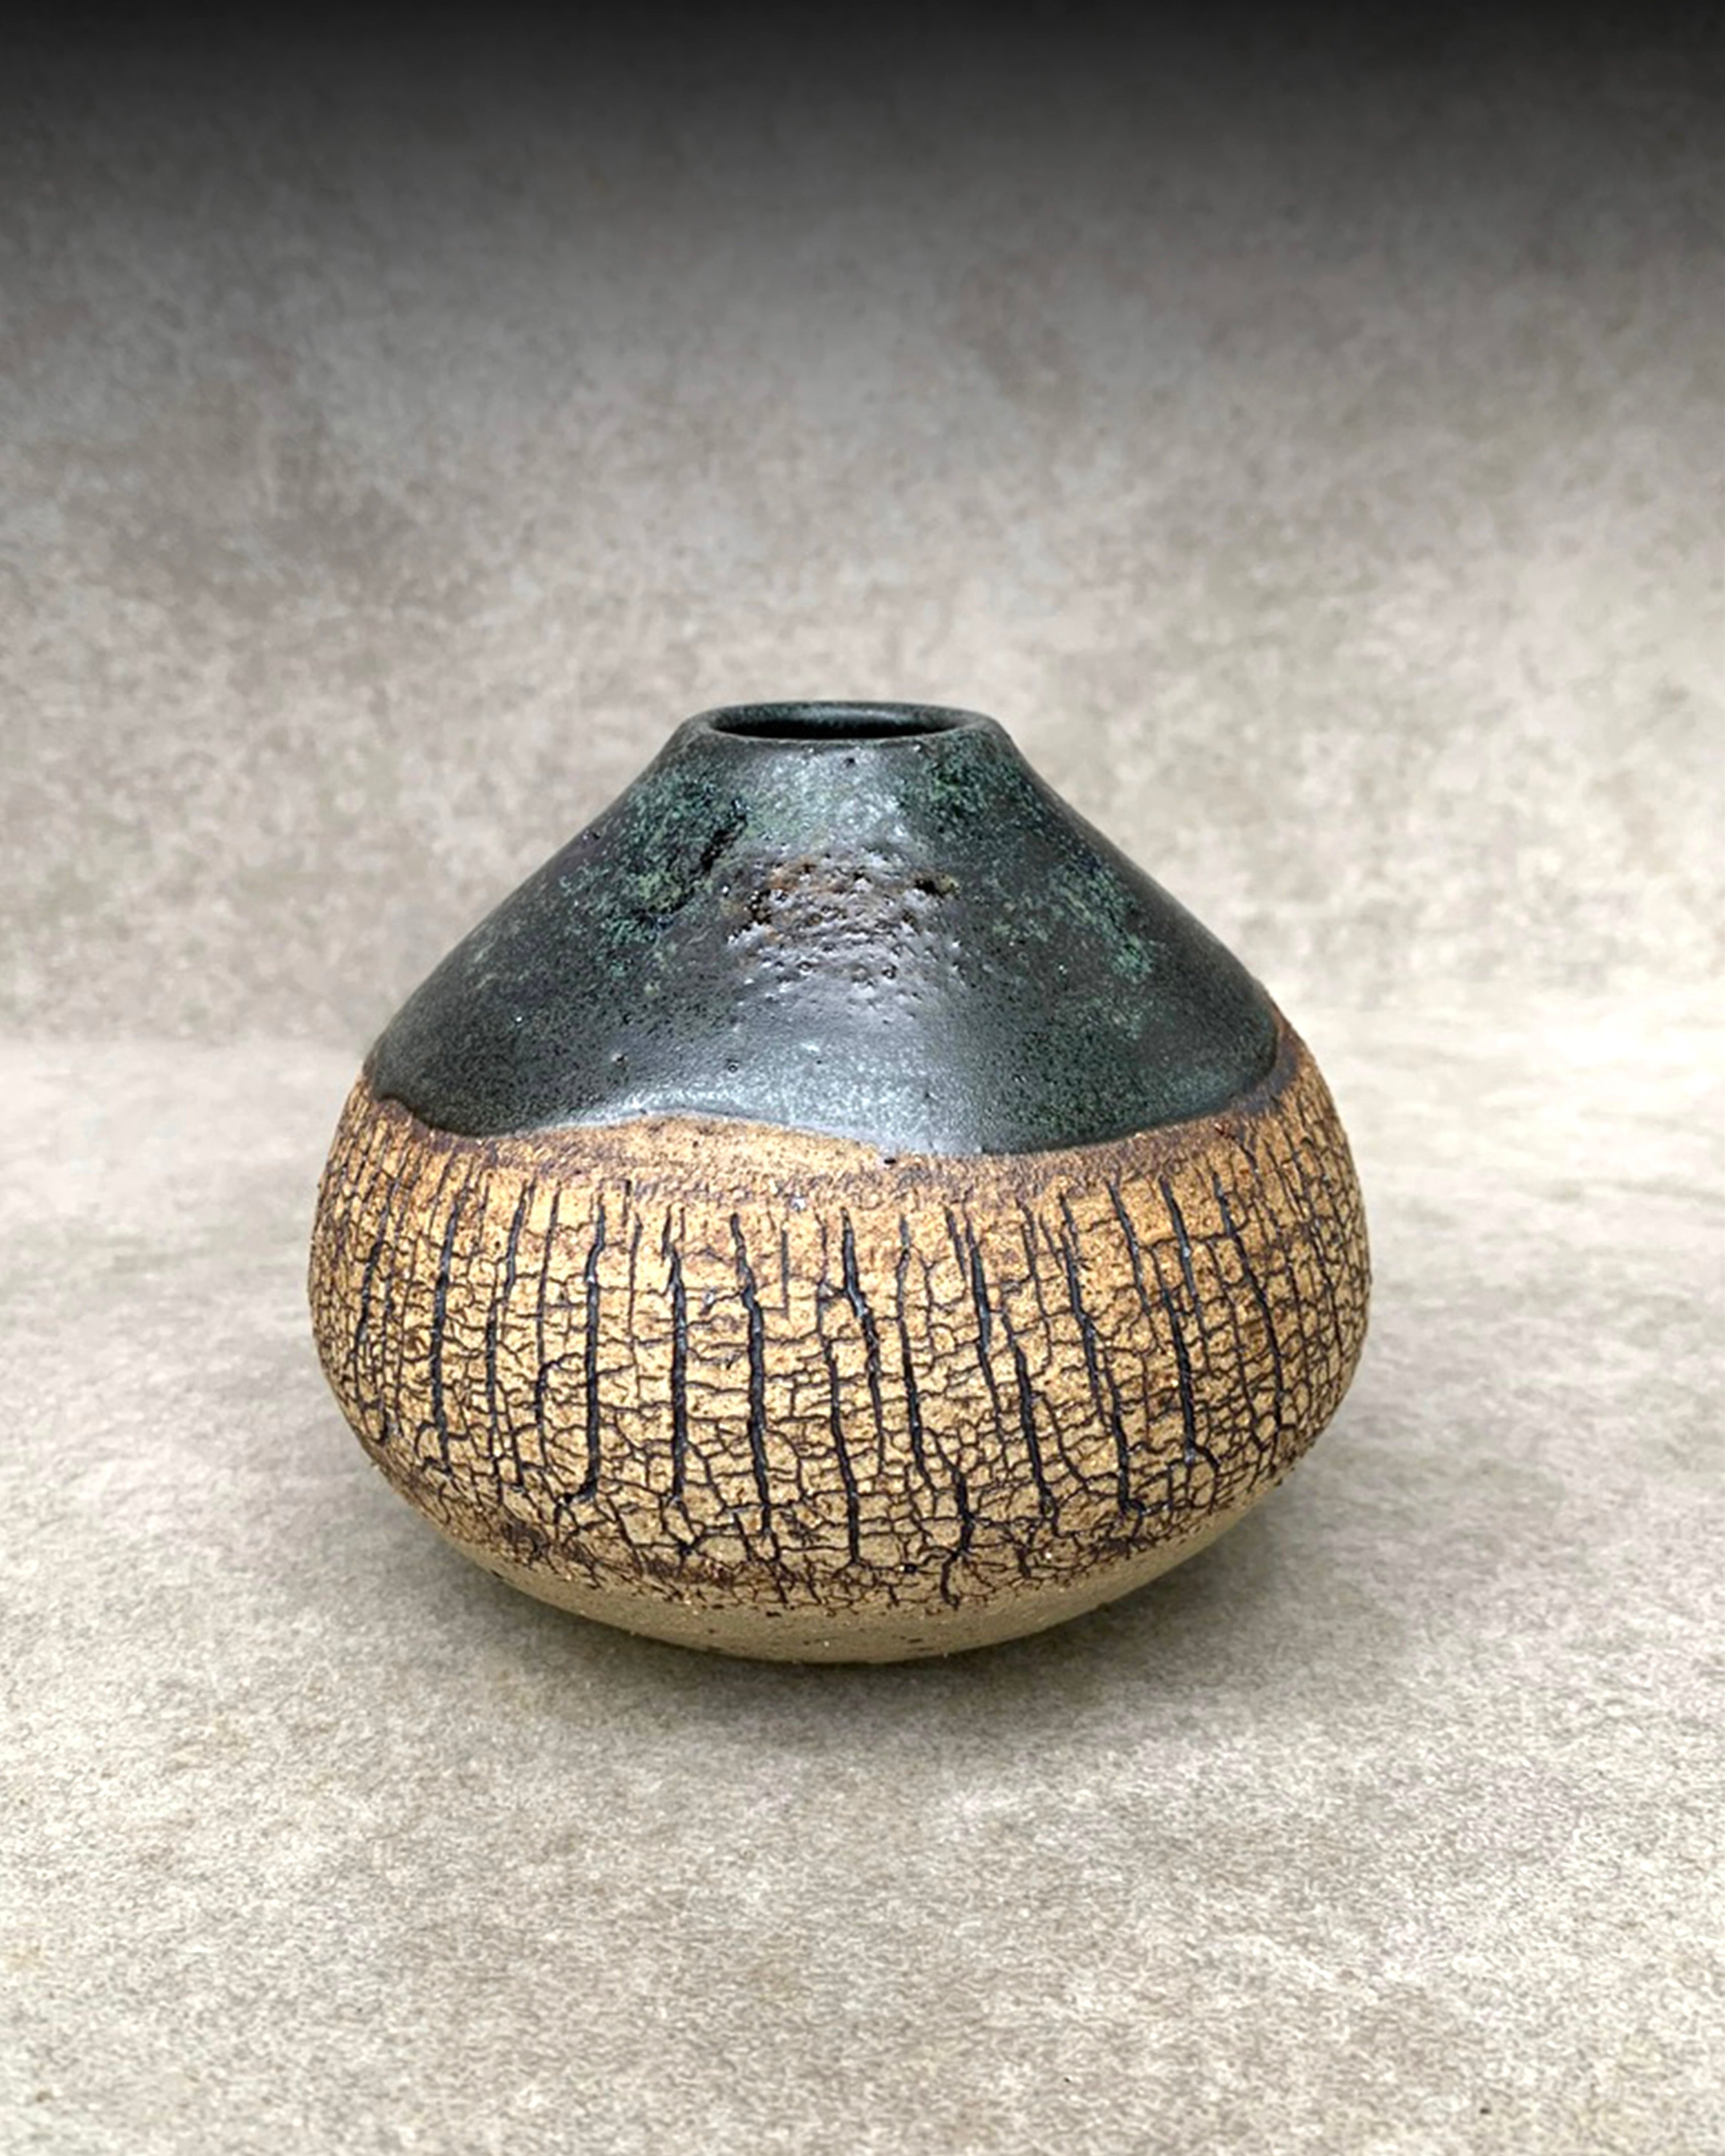 Bark Bud Vase with black glaze